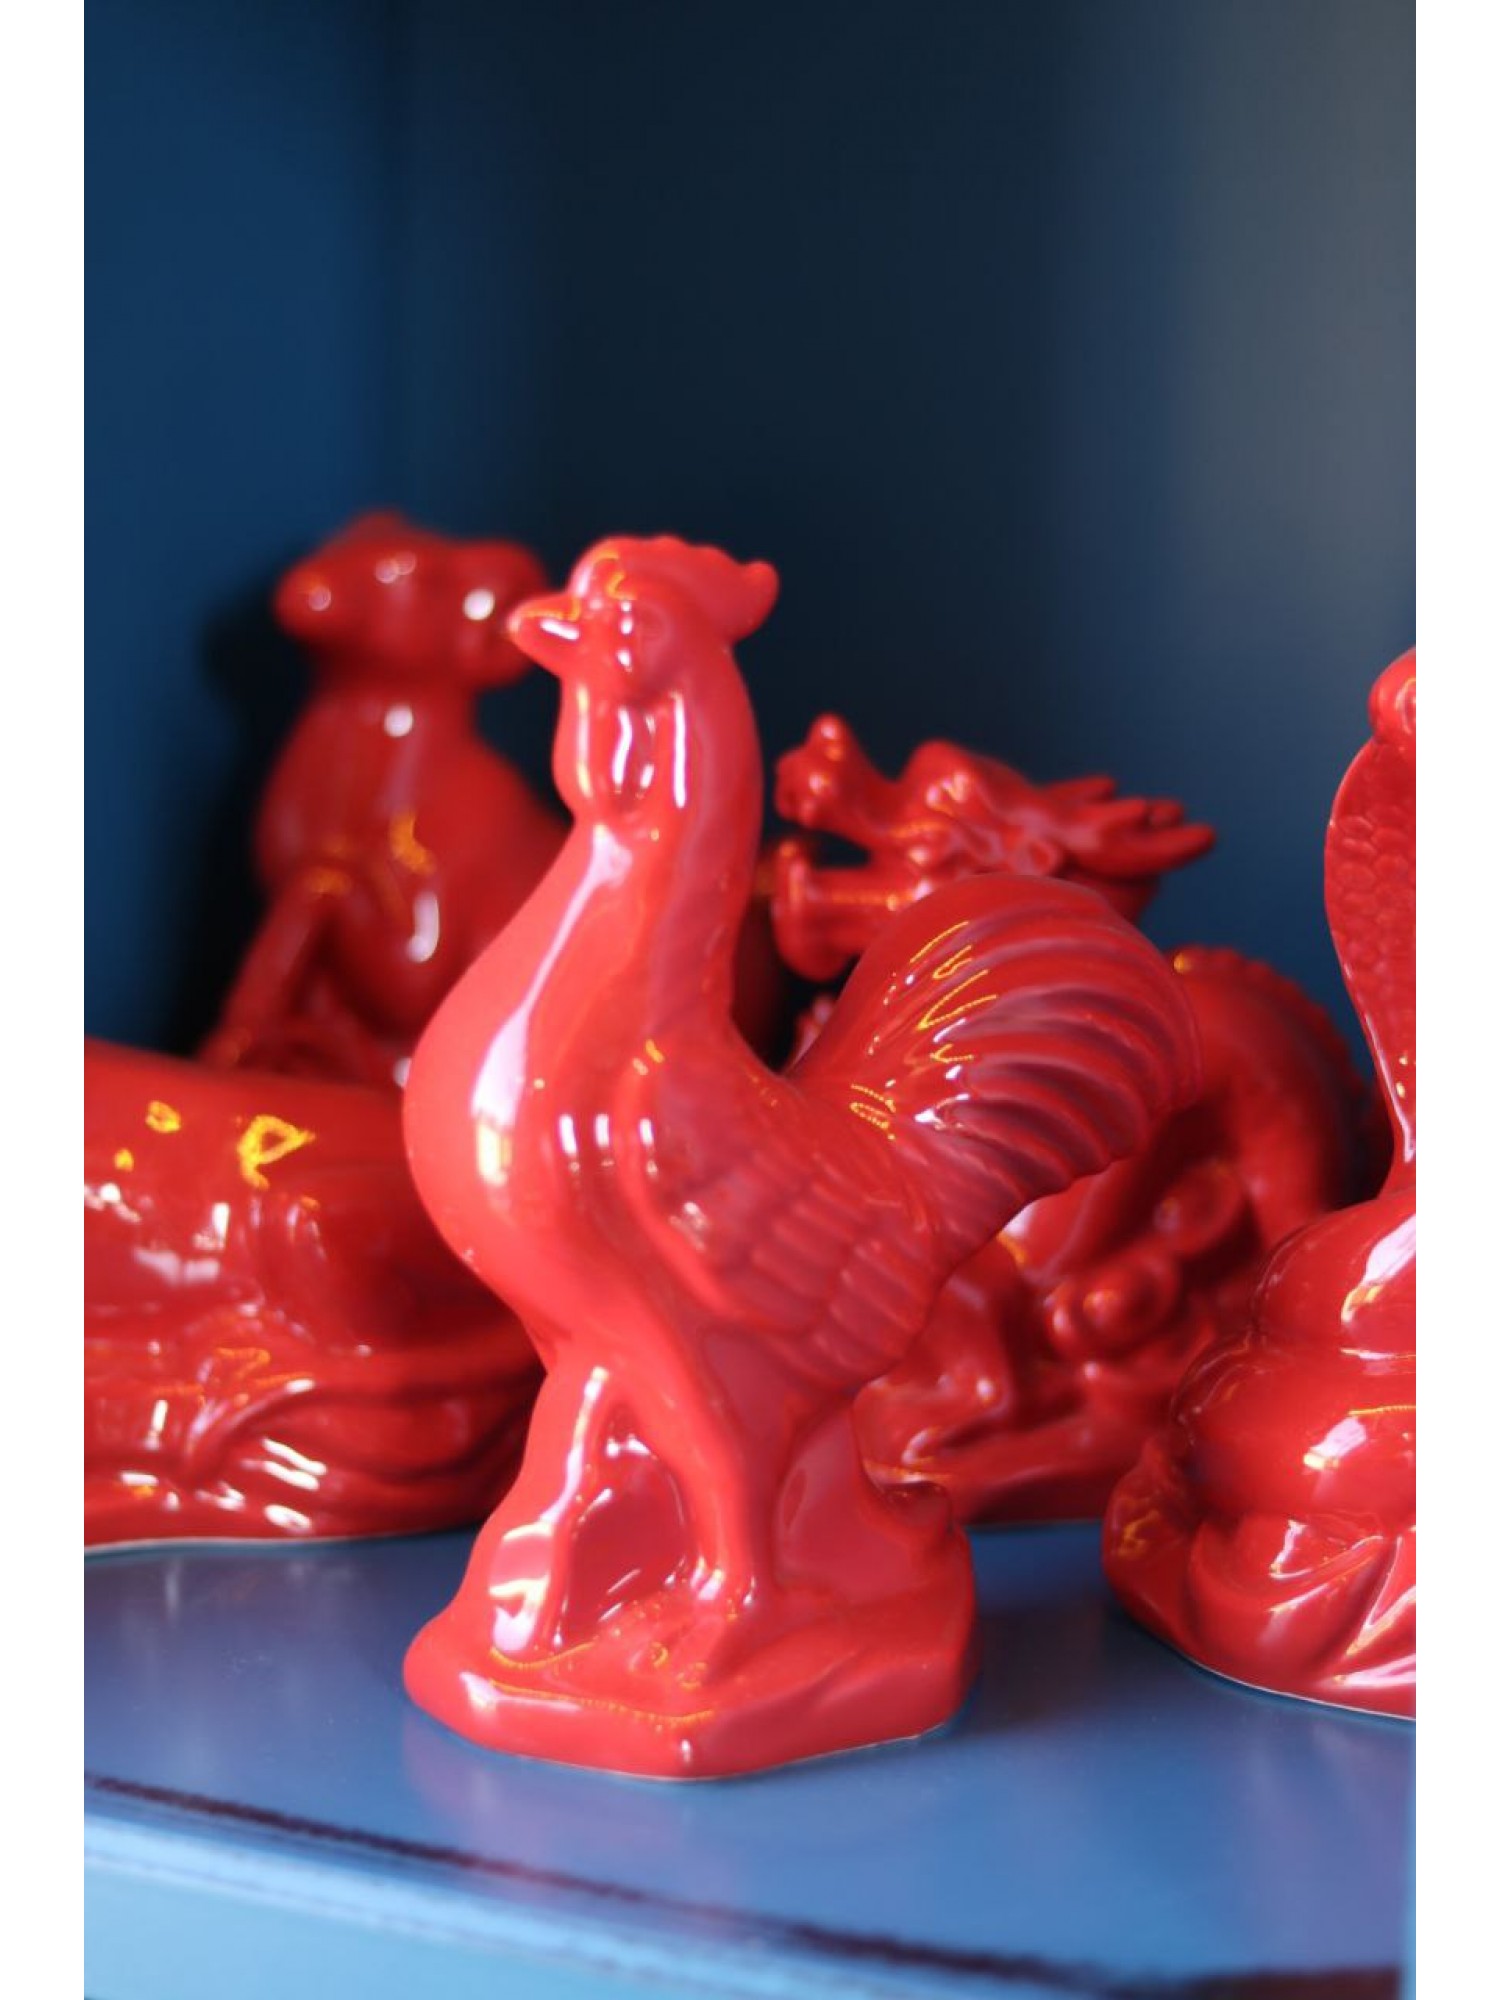 Статуэтка "Красный Петух" из фарфора (средняя)  поможет наладить отношения и получить известность!